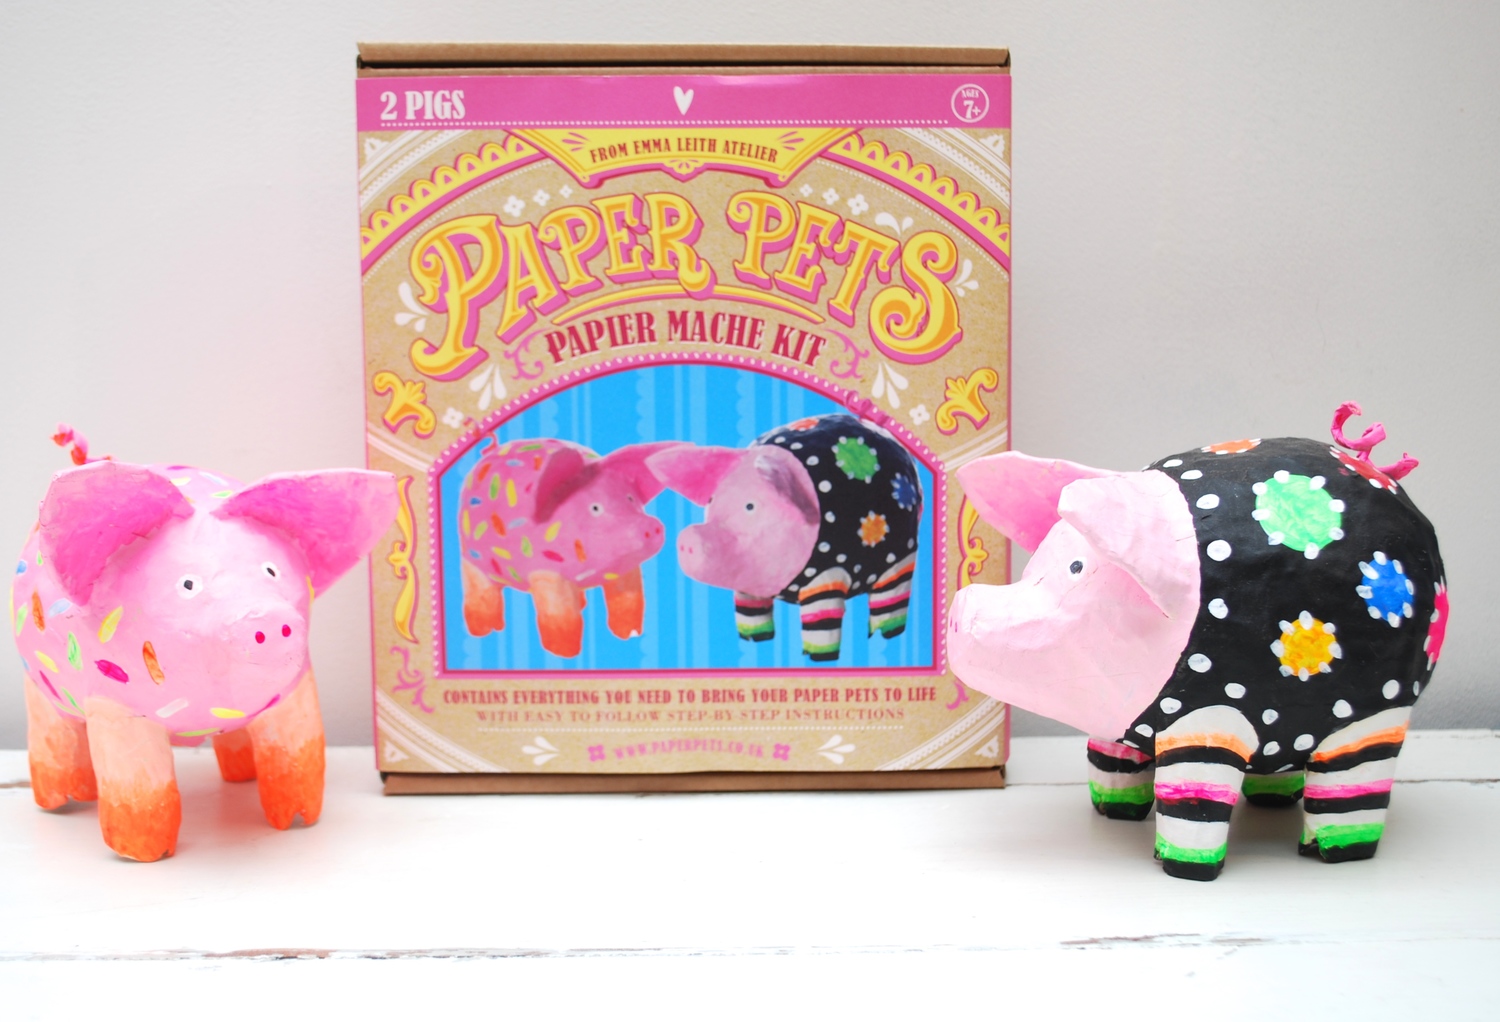 Pig papier mache kit | EMMA LEITH